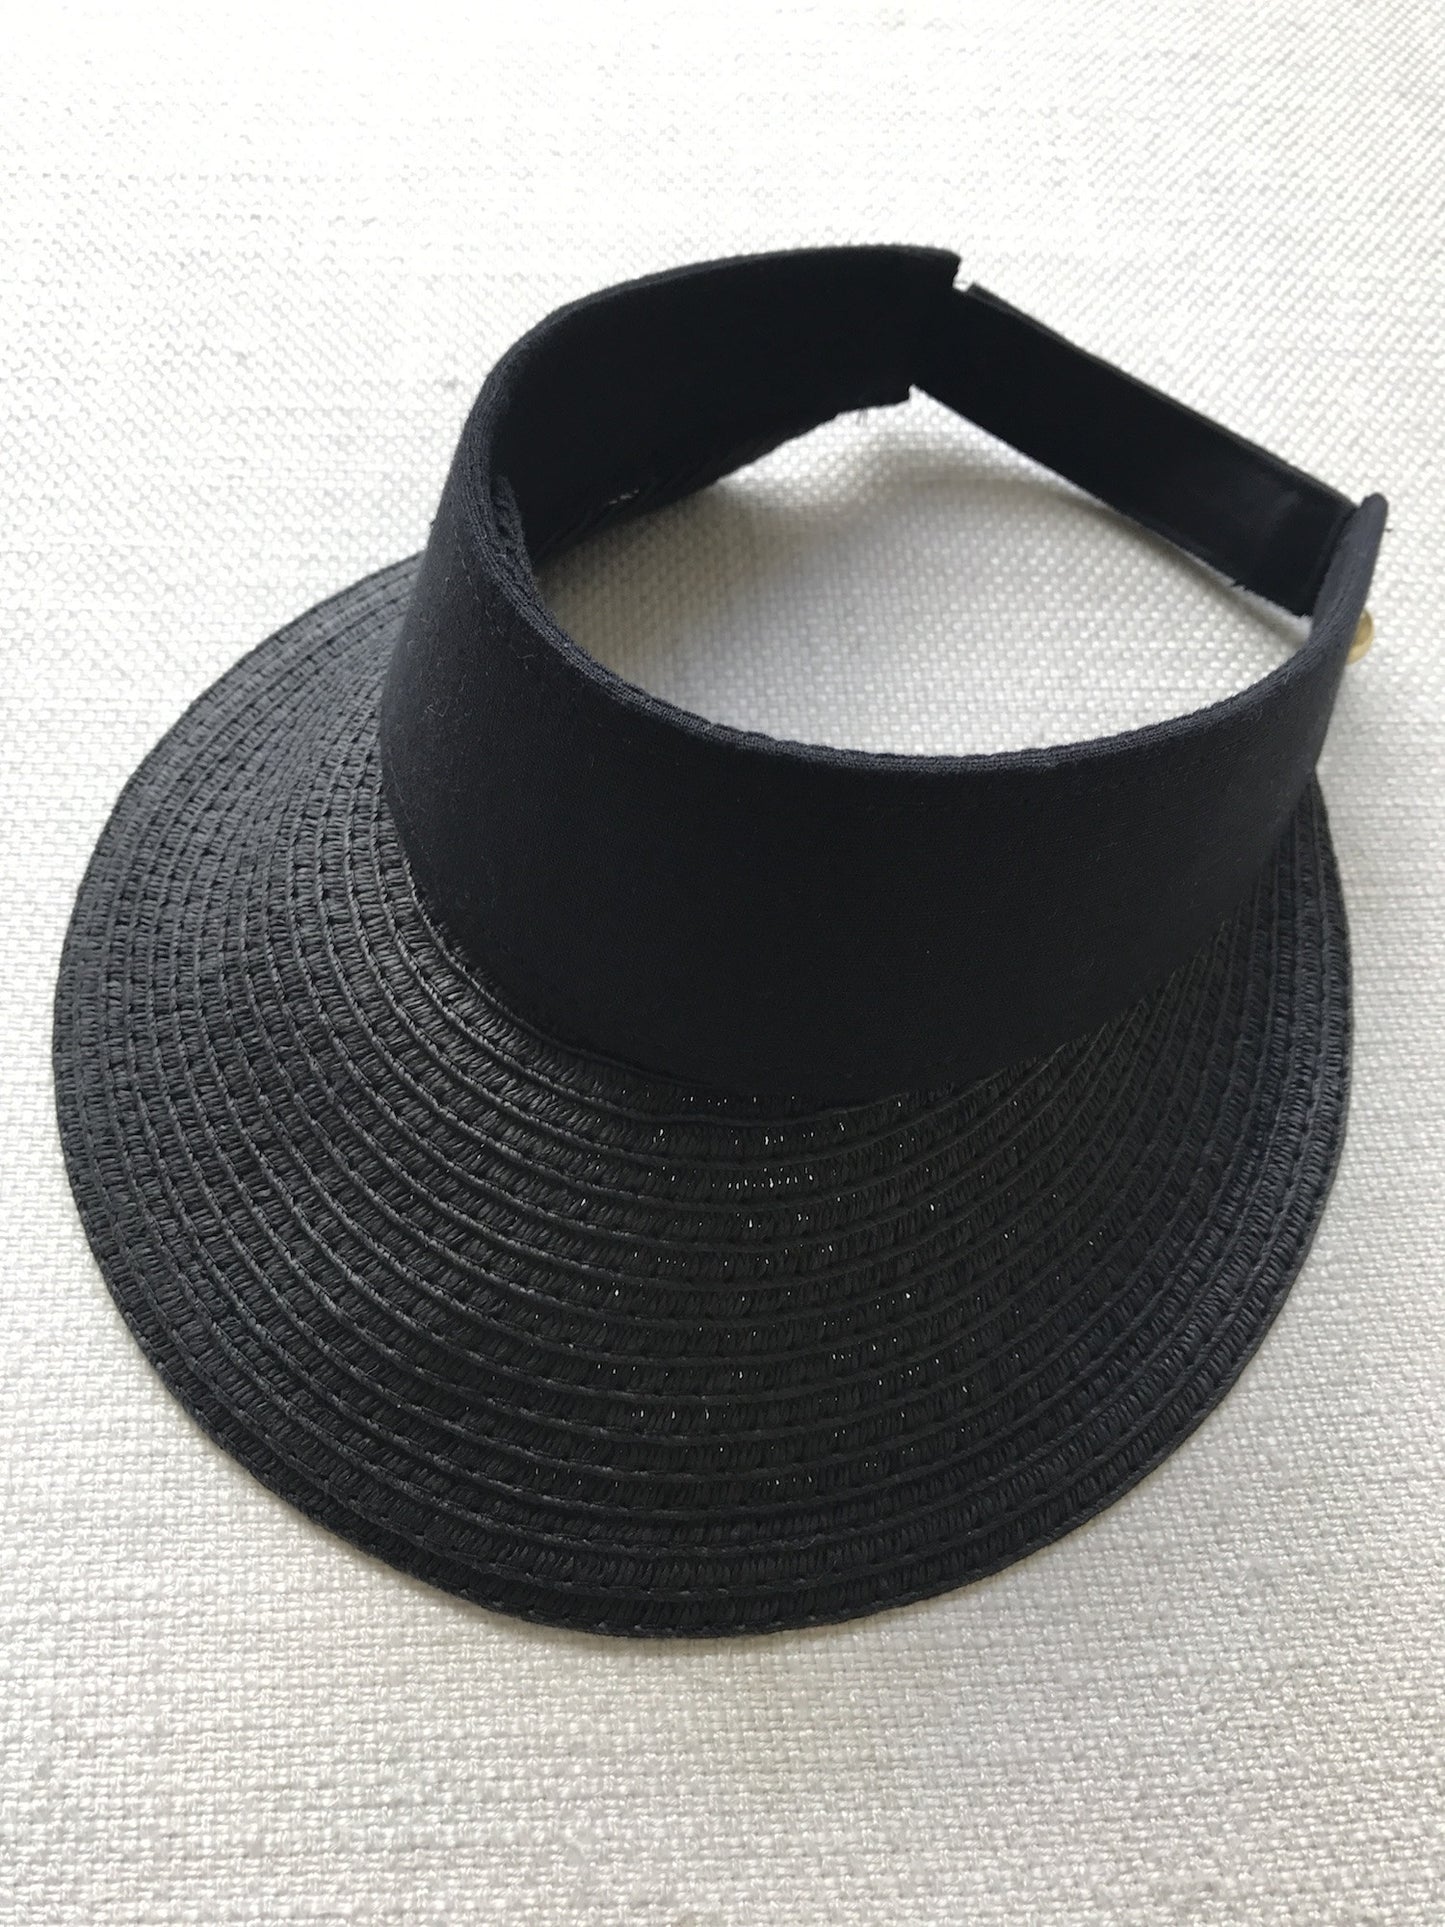 STRAW 遮陽帽 - 3 種顏色 *預購*